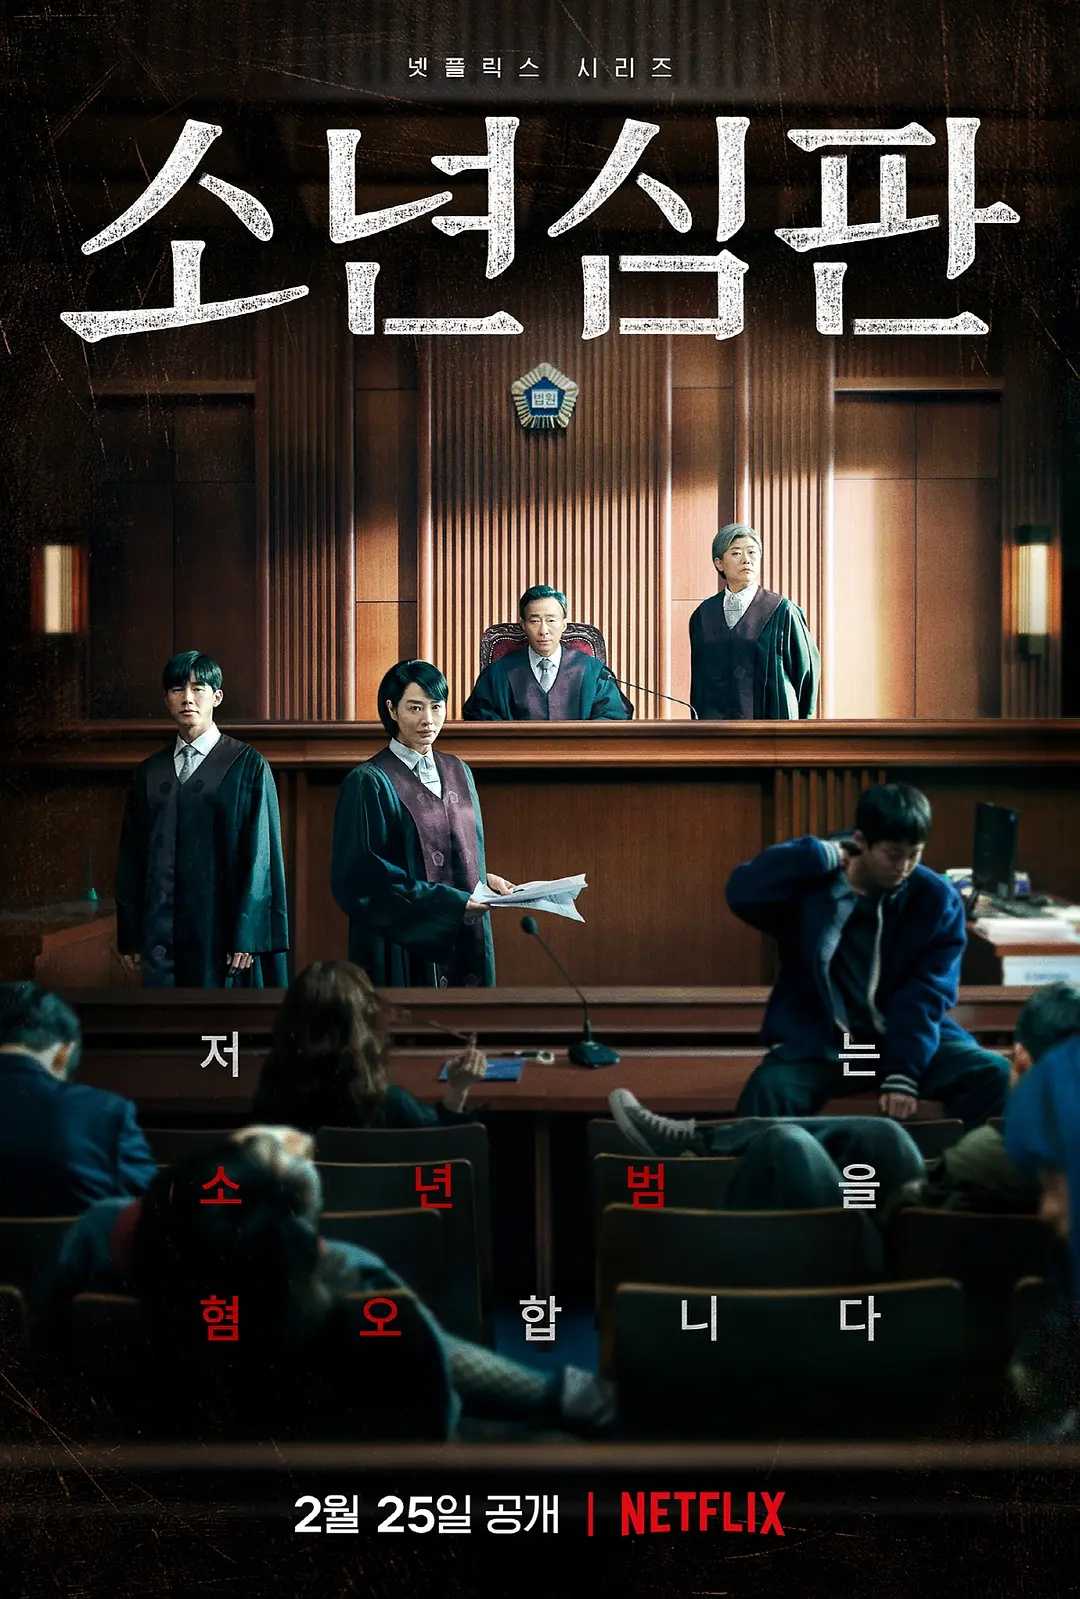 少年法庭(2022)【10集全】【1080P】【内封简繁字幕】【剧情/犯罪】【豆瓣8.7】